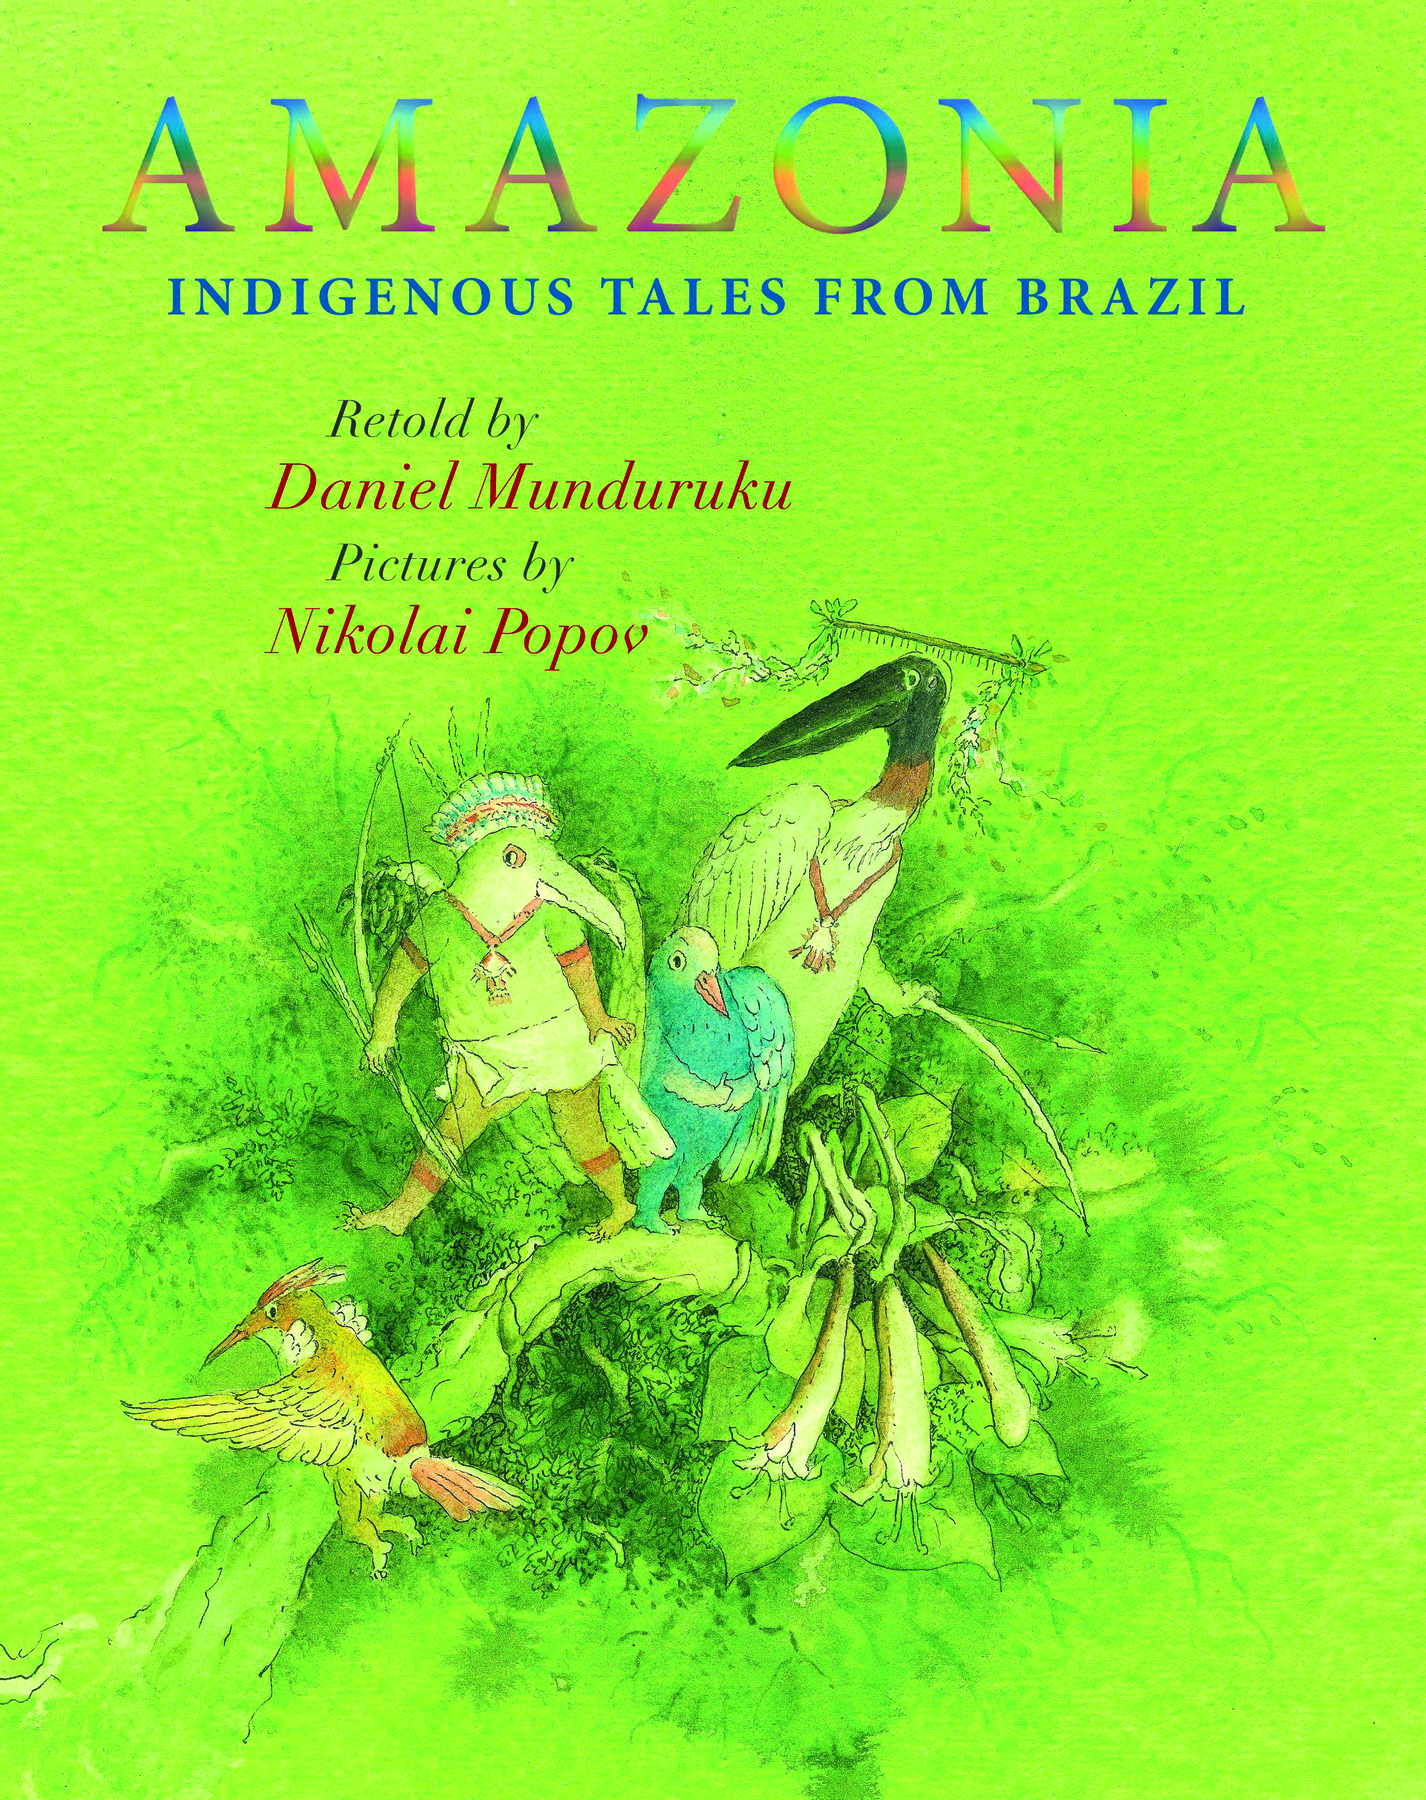 Capa de livro. Na parte superior, o título: AMAZONIA, INDIGENOUS TALES FROM BRAZIL. Abaixo, lê-se WRITTEN BY DANIEL MUNDURUKU, PICTURES BY NIKOLAI POPOV. Abaixo há uma ilustração de pequenos animais em tons de verde.